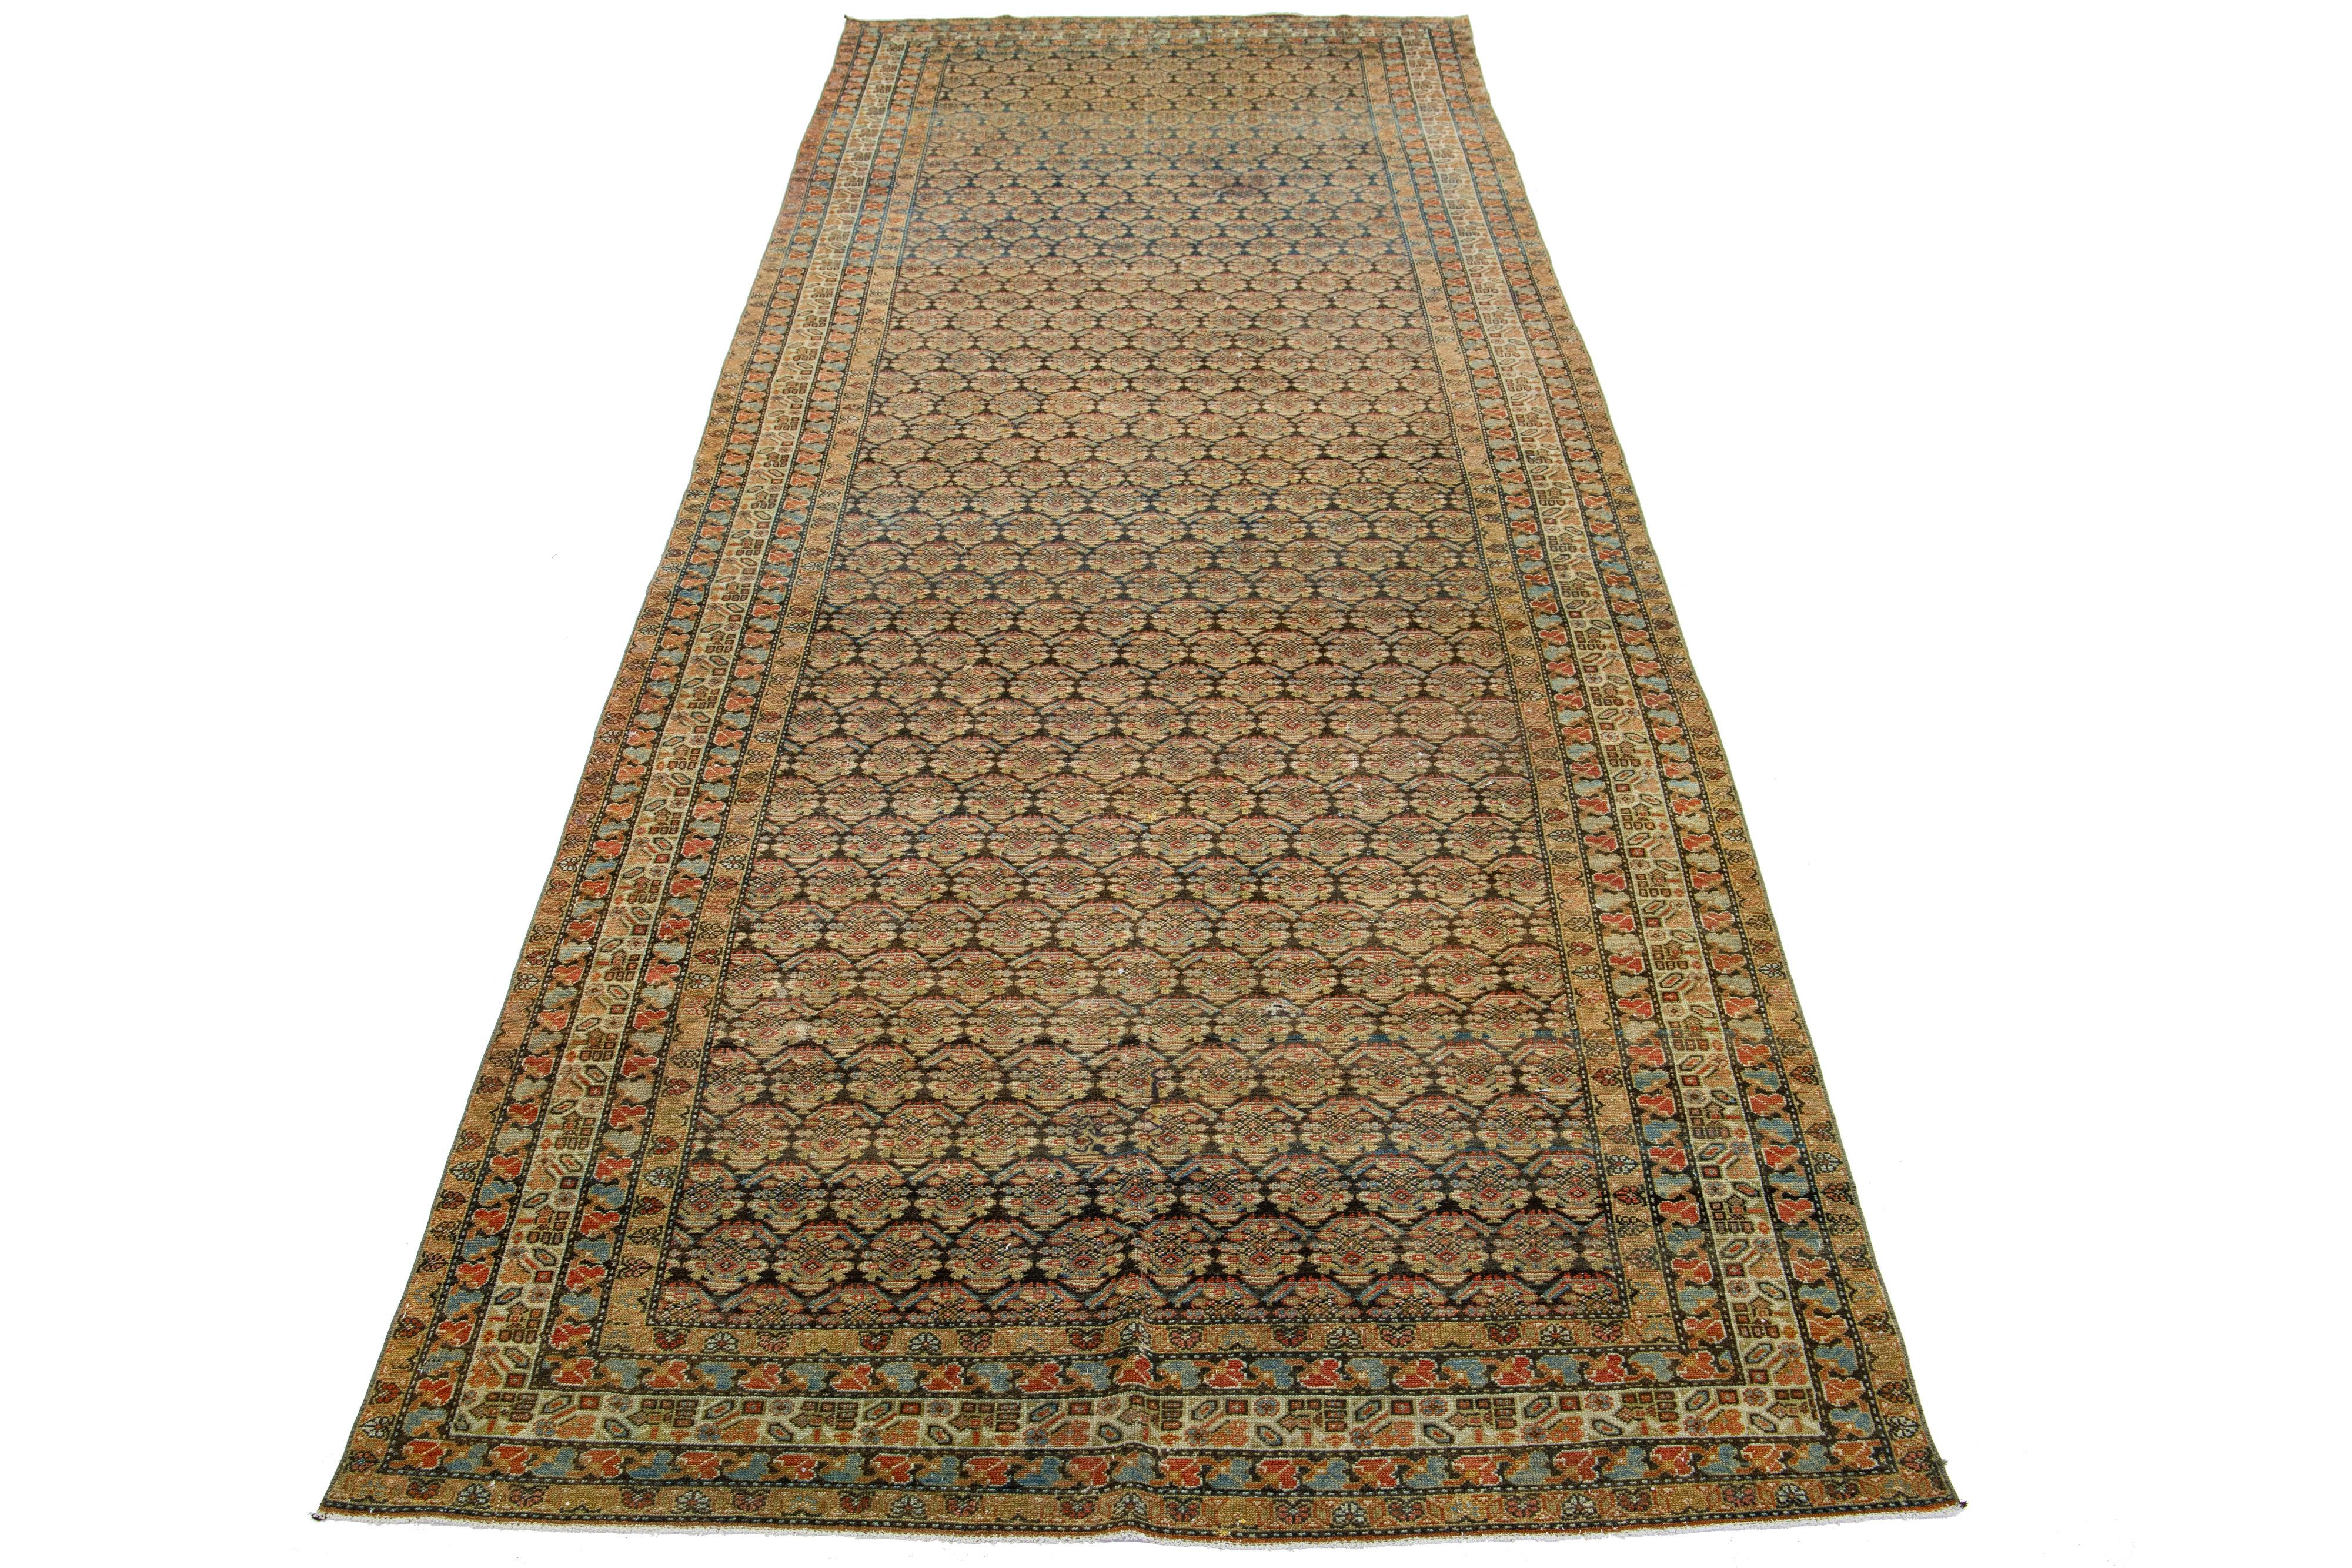 Dieser außergewöhnliche antike persische Malayer-Teppich ist aus handgearbeiteter Wolle gefertigt. Das Design des Teppichs zeigt eine Kombination aus Blau und Braun als Basis, die mit beigen und rostfarbenen Highlights in einem bemerkenswert